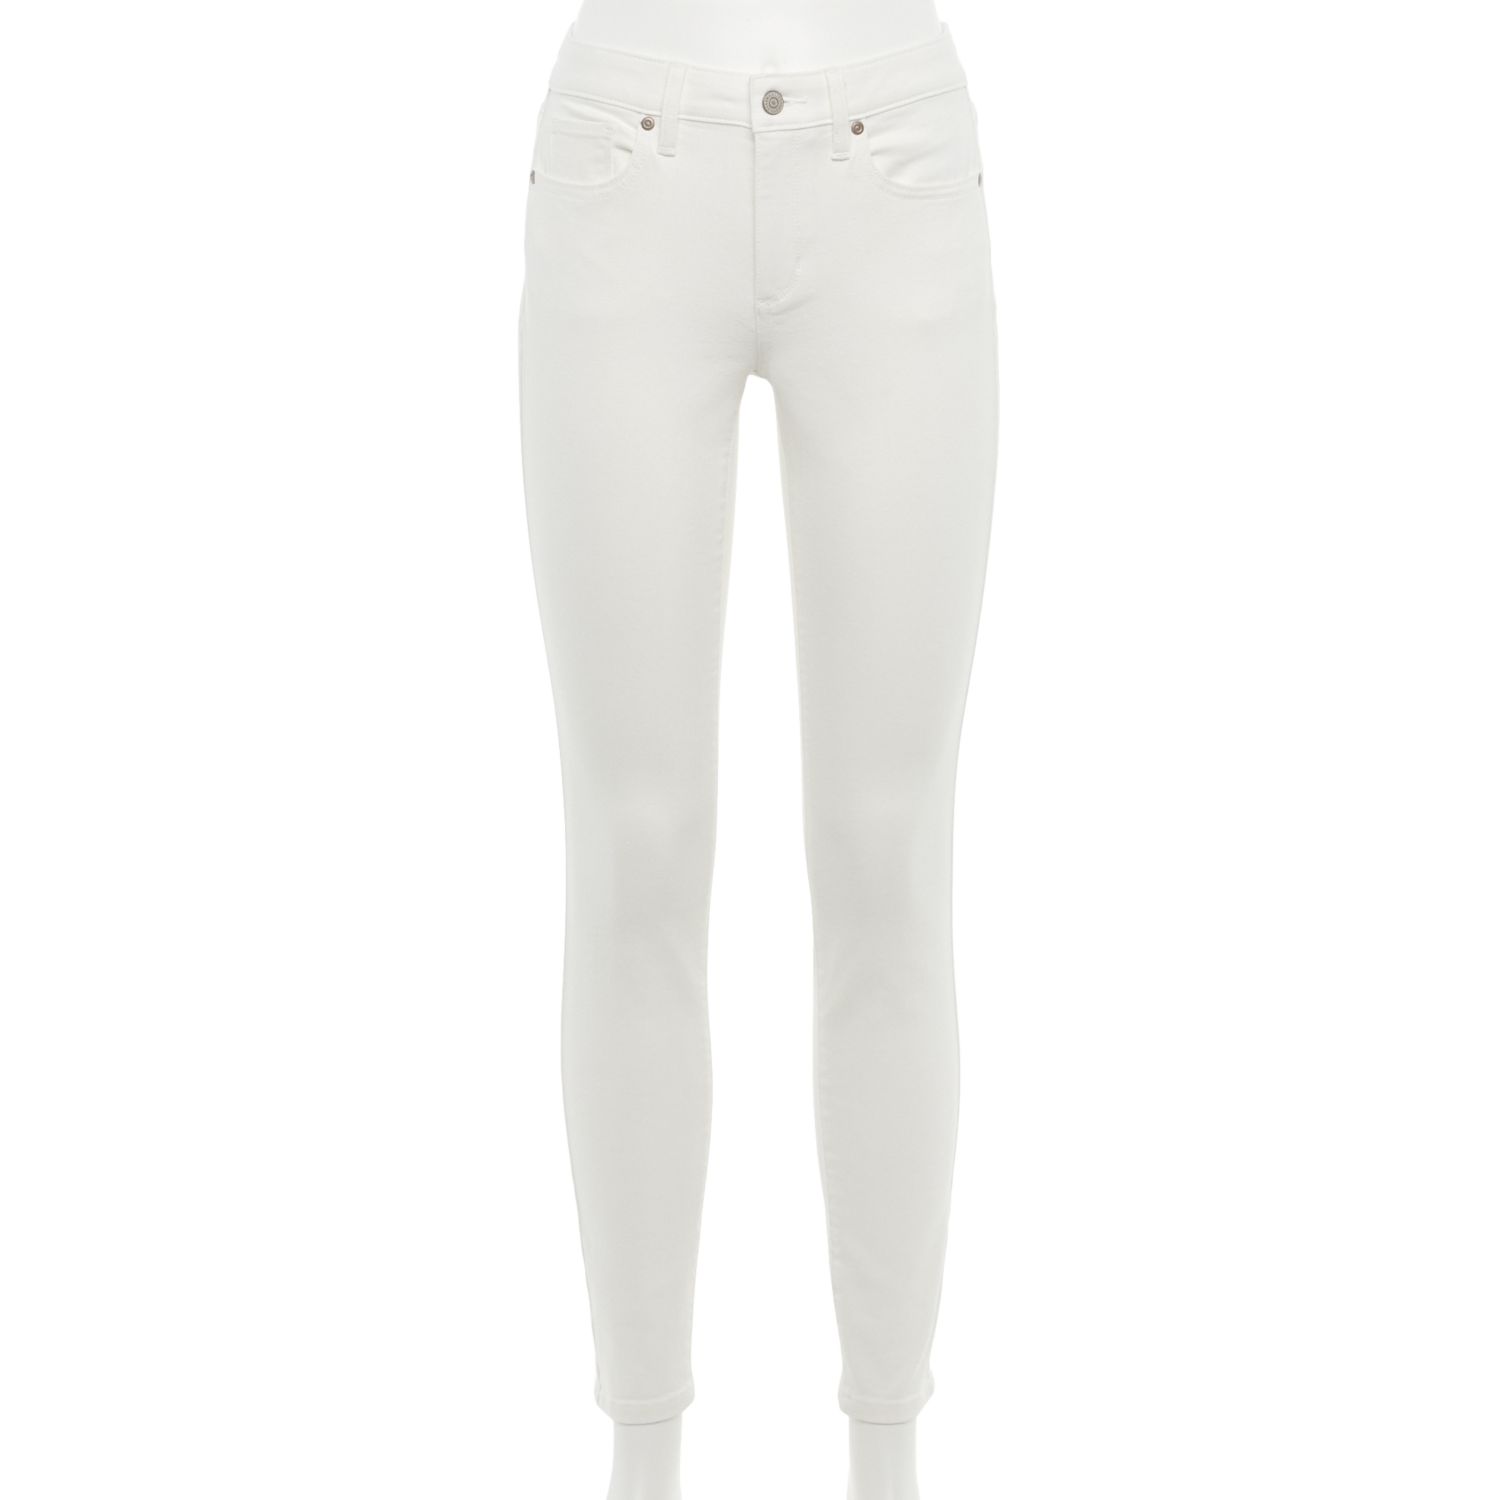 kohls white skinny jeans